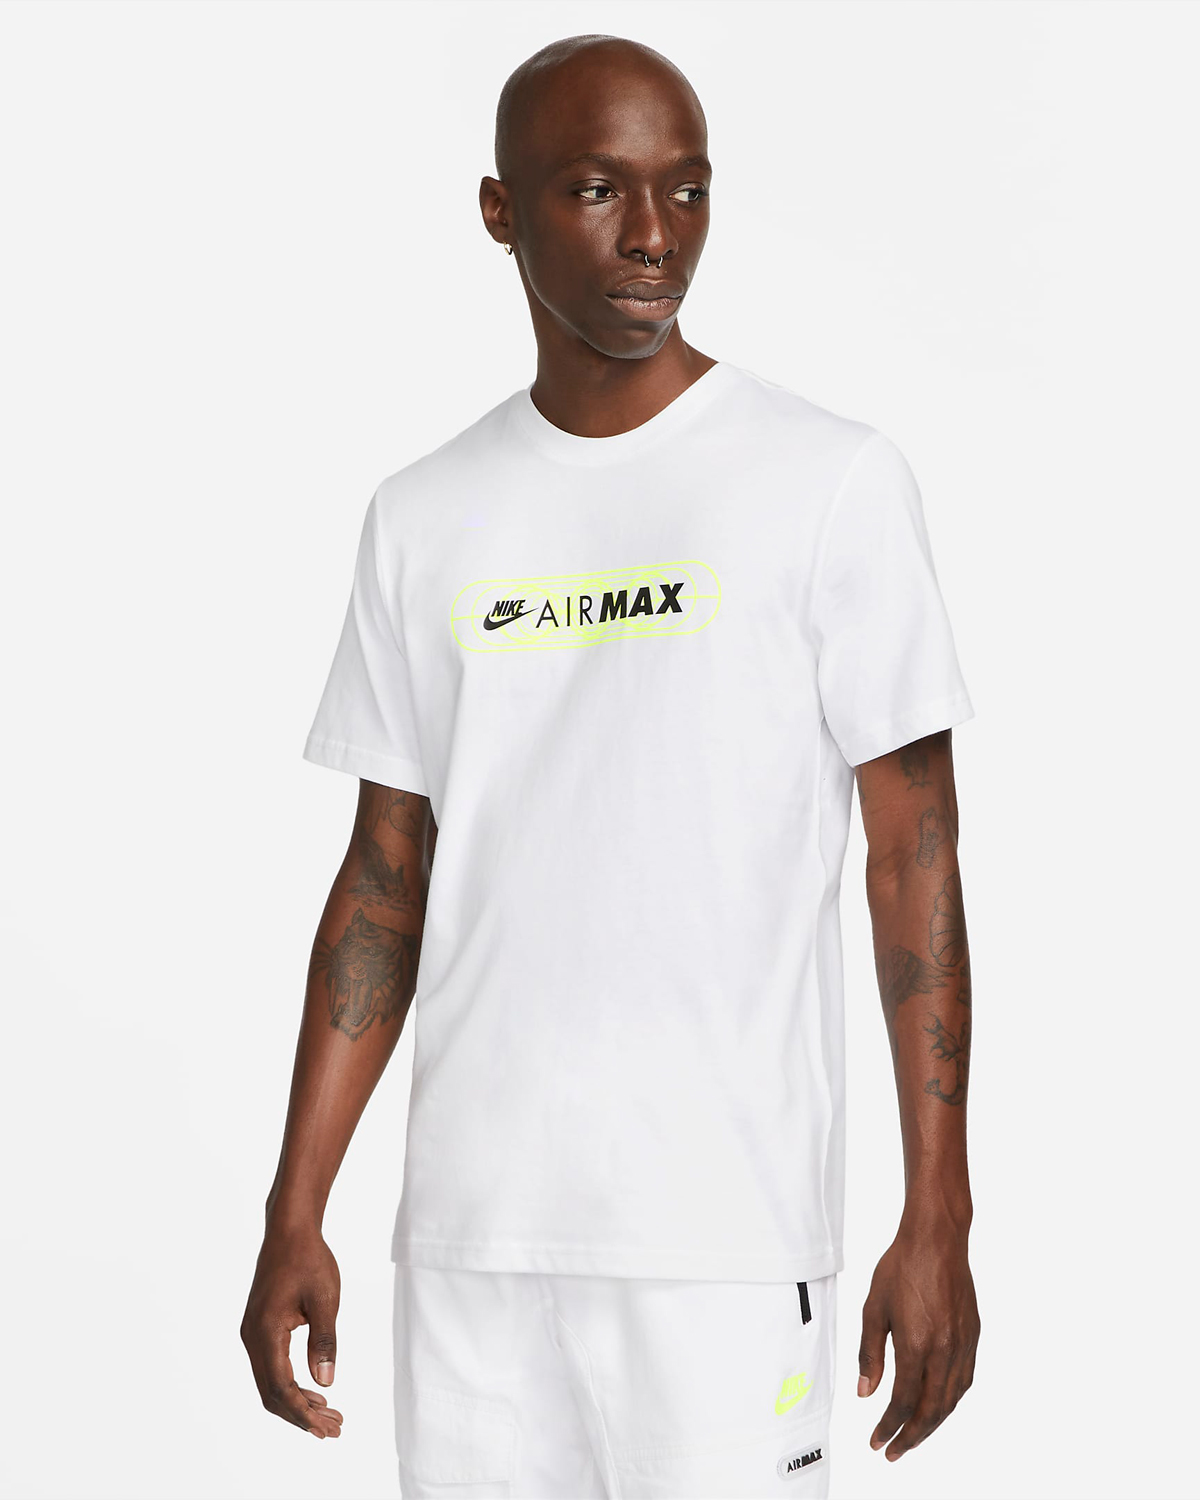 Nike-Air-Max-T-Shirt-White-Volt